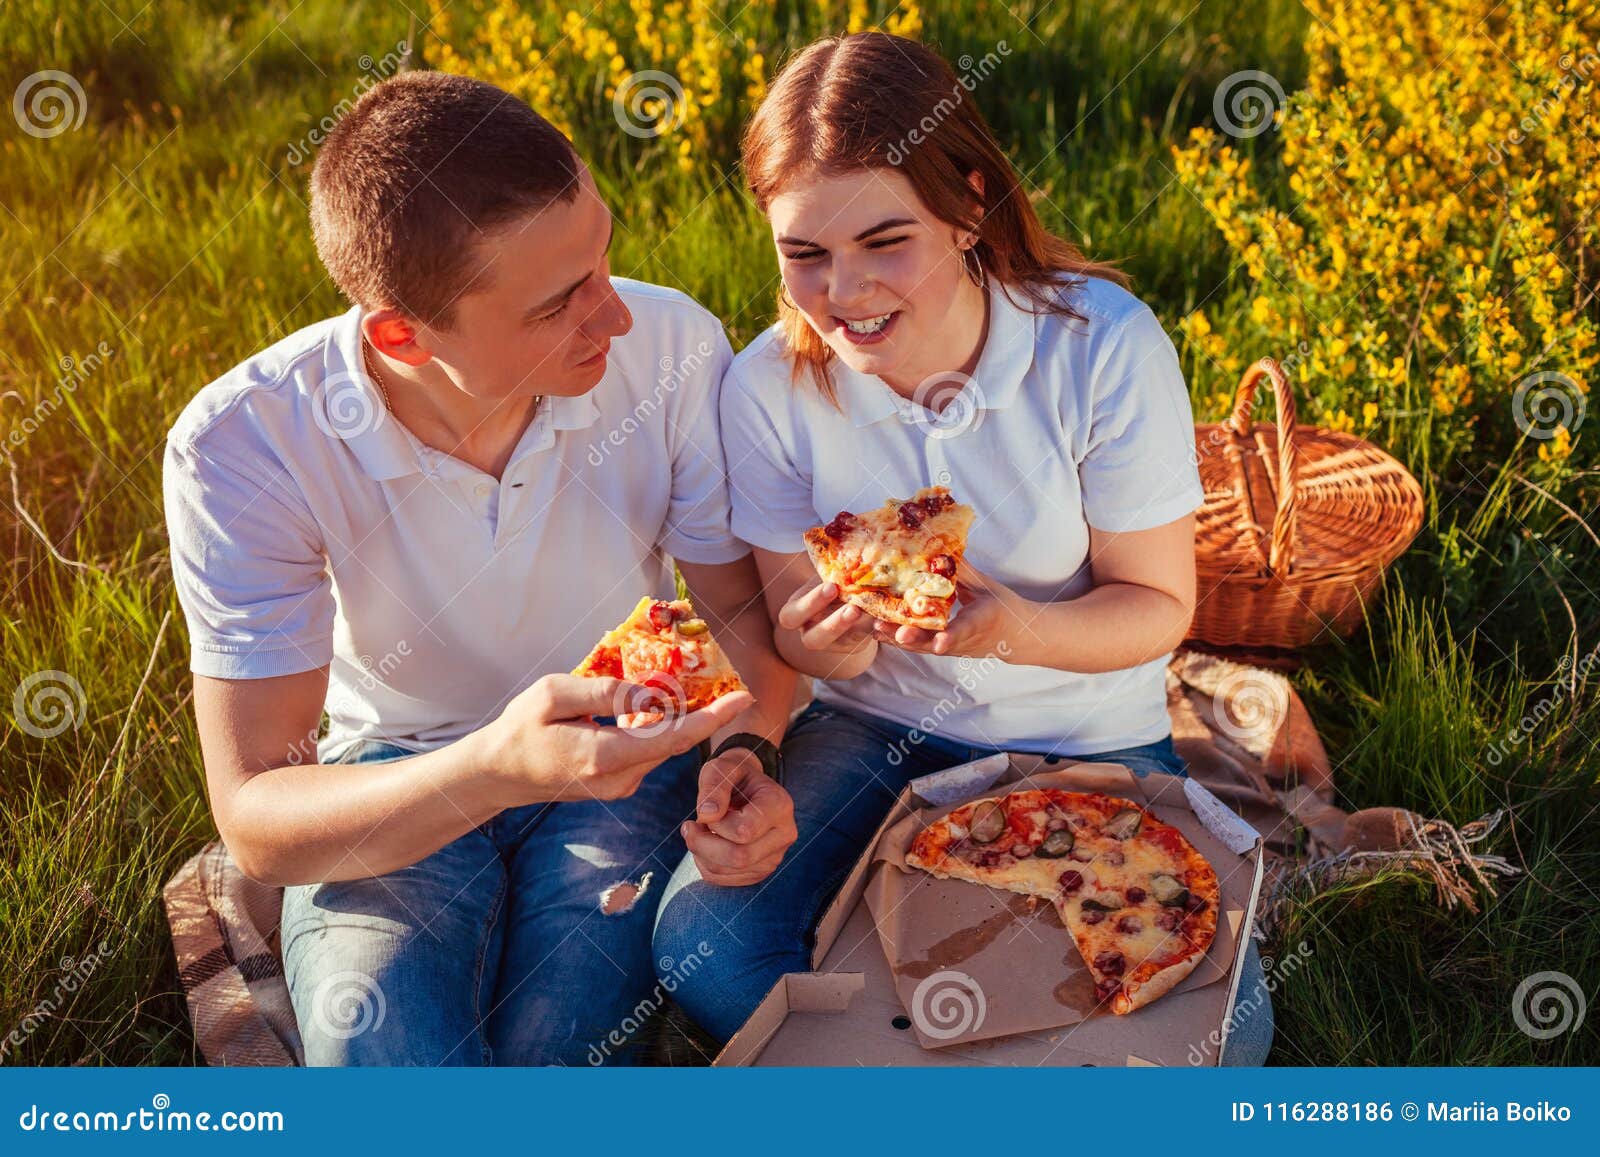 фотосессия пары с пиццей фото 9